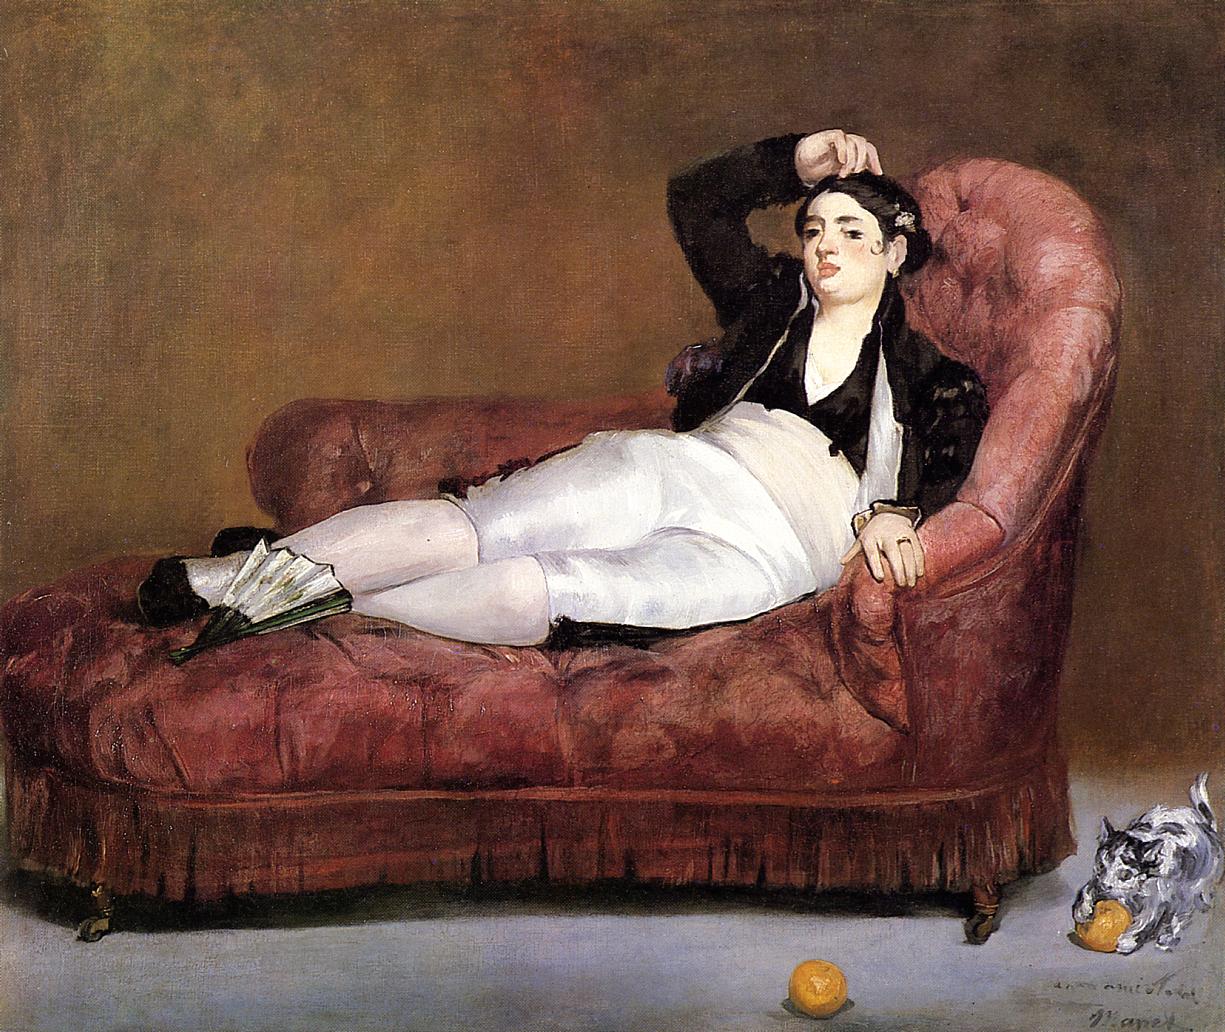 Эдуард Мане. "Лежащая молодая женщина в испанском костюме". 1862. Картинная калерея Йельского университета, Нью-Хейвен.